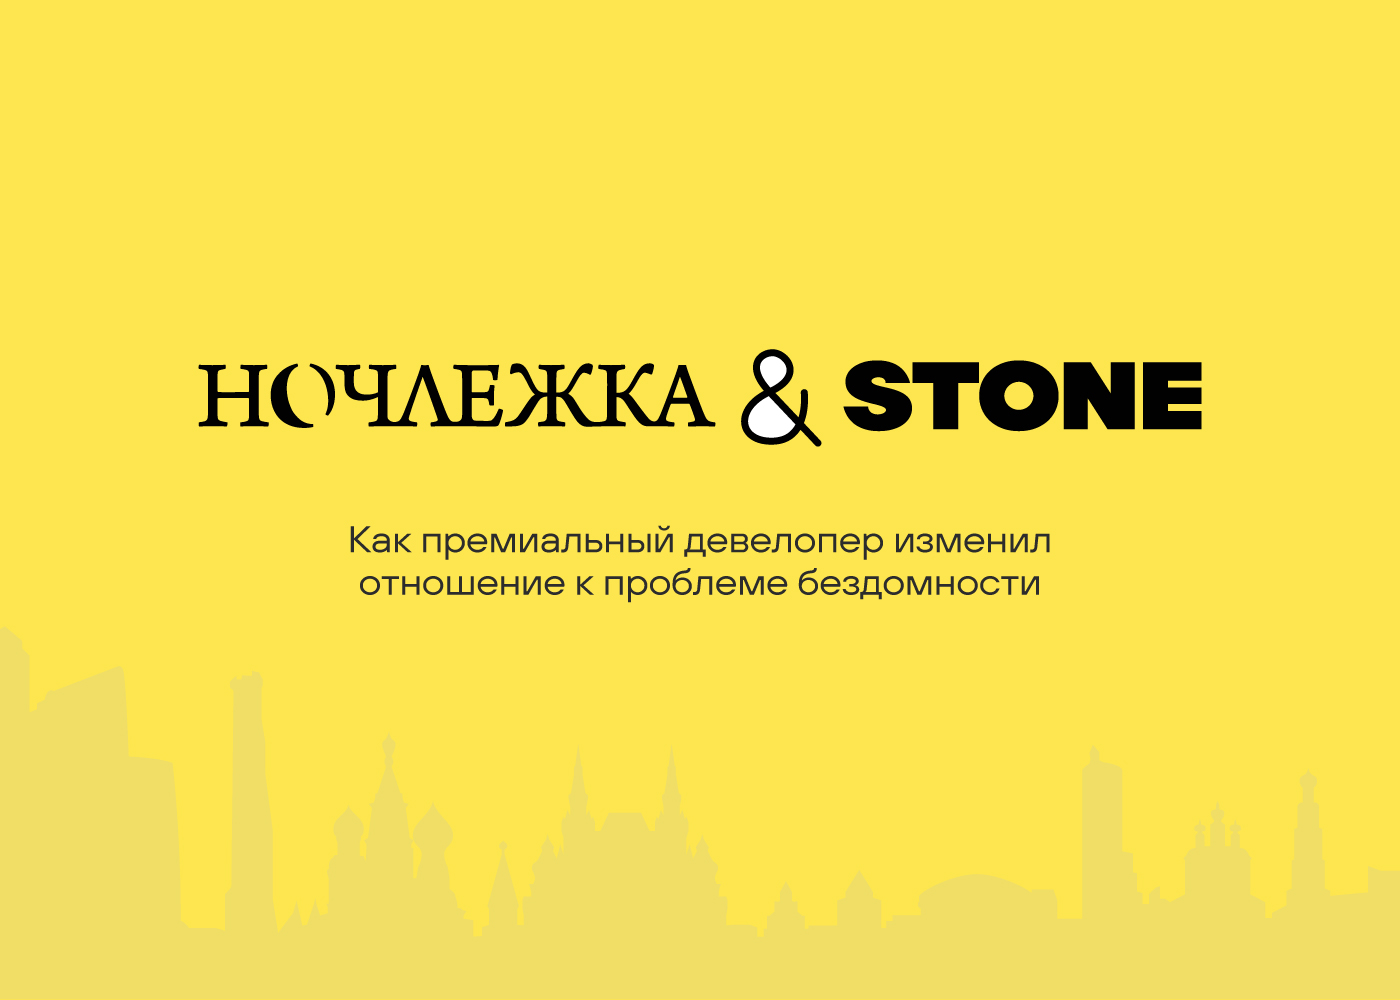 stone&nochlezhka.jpg